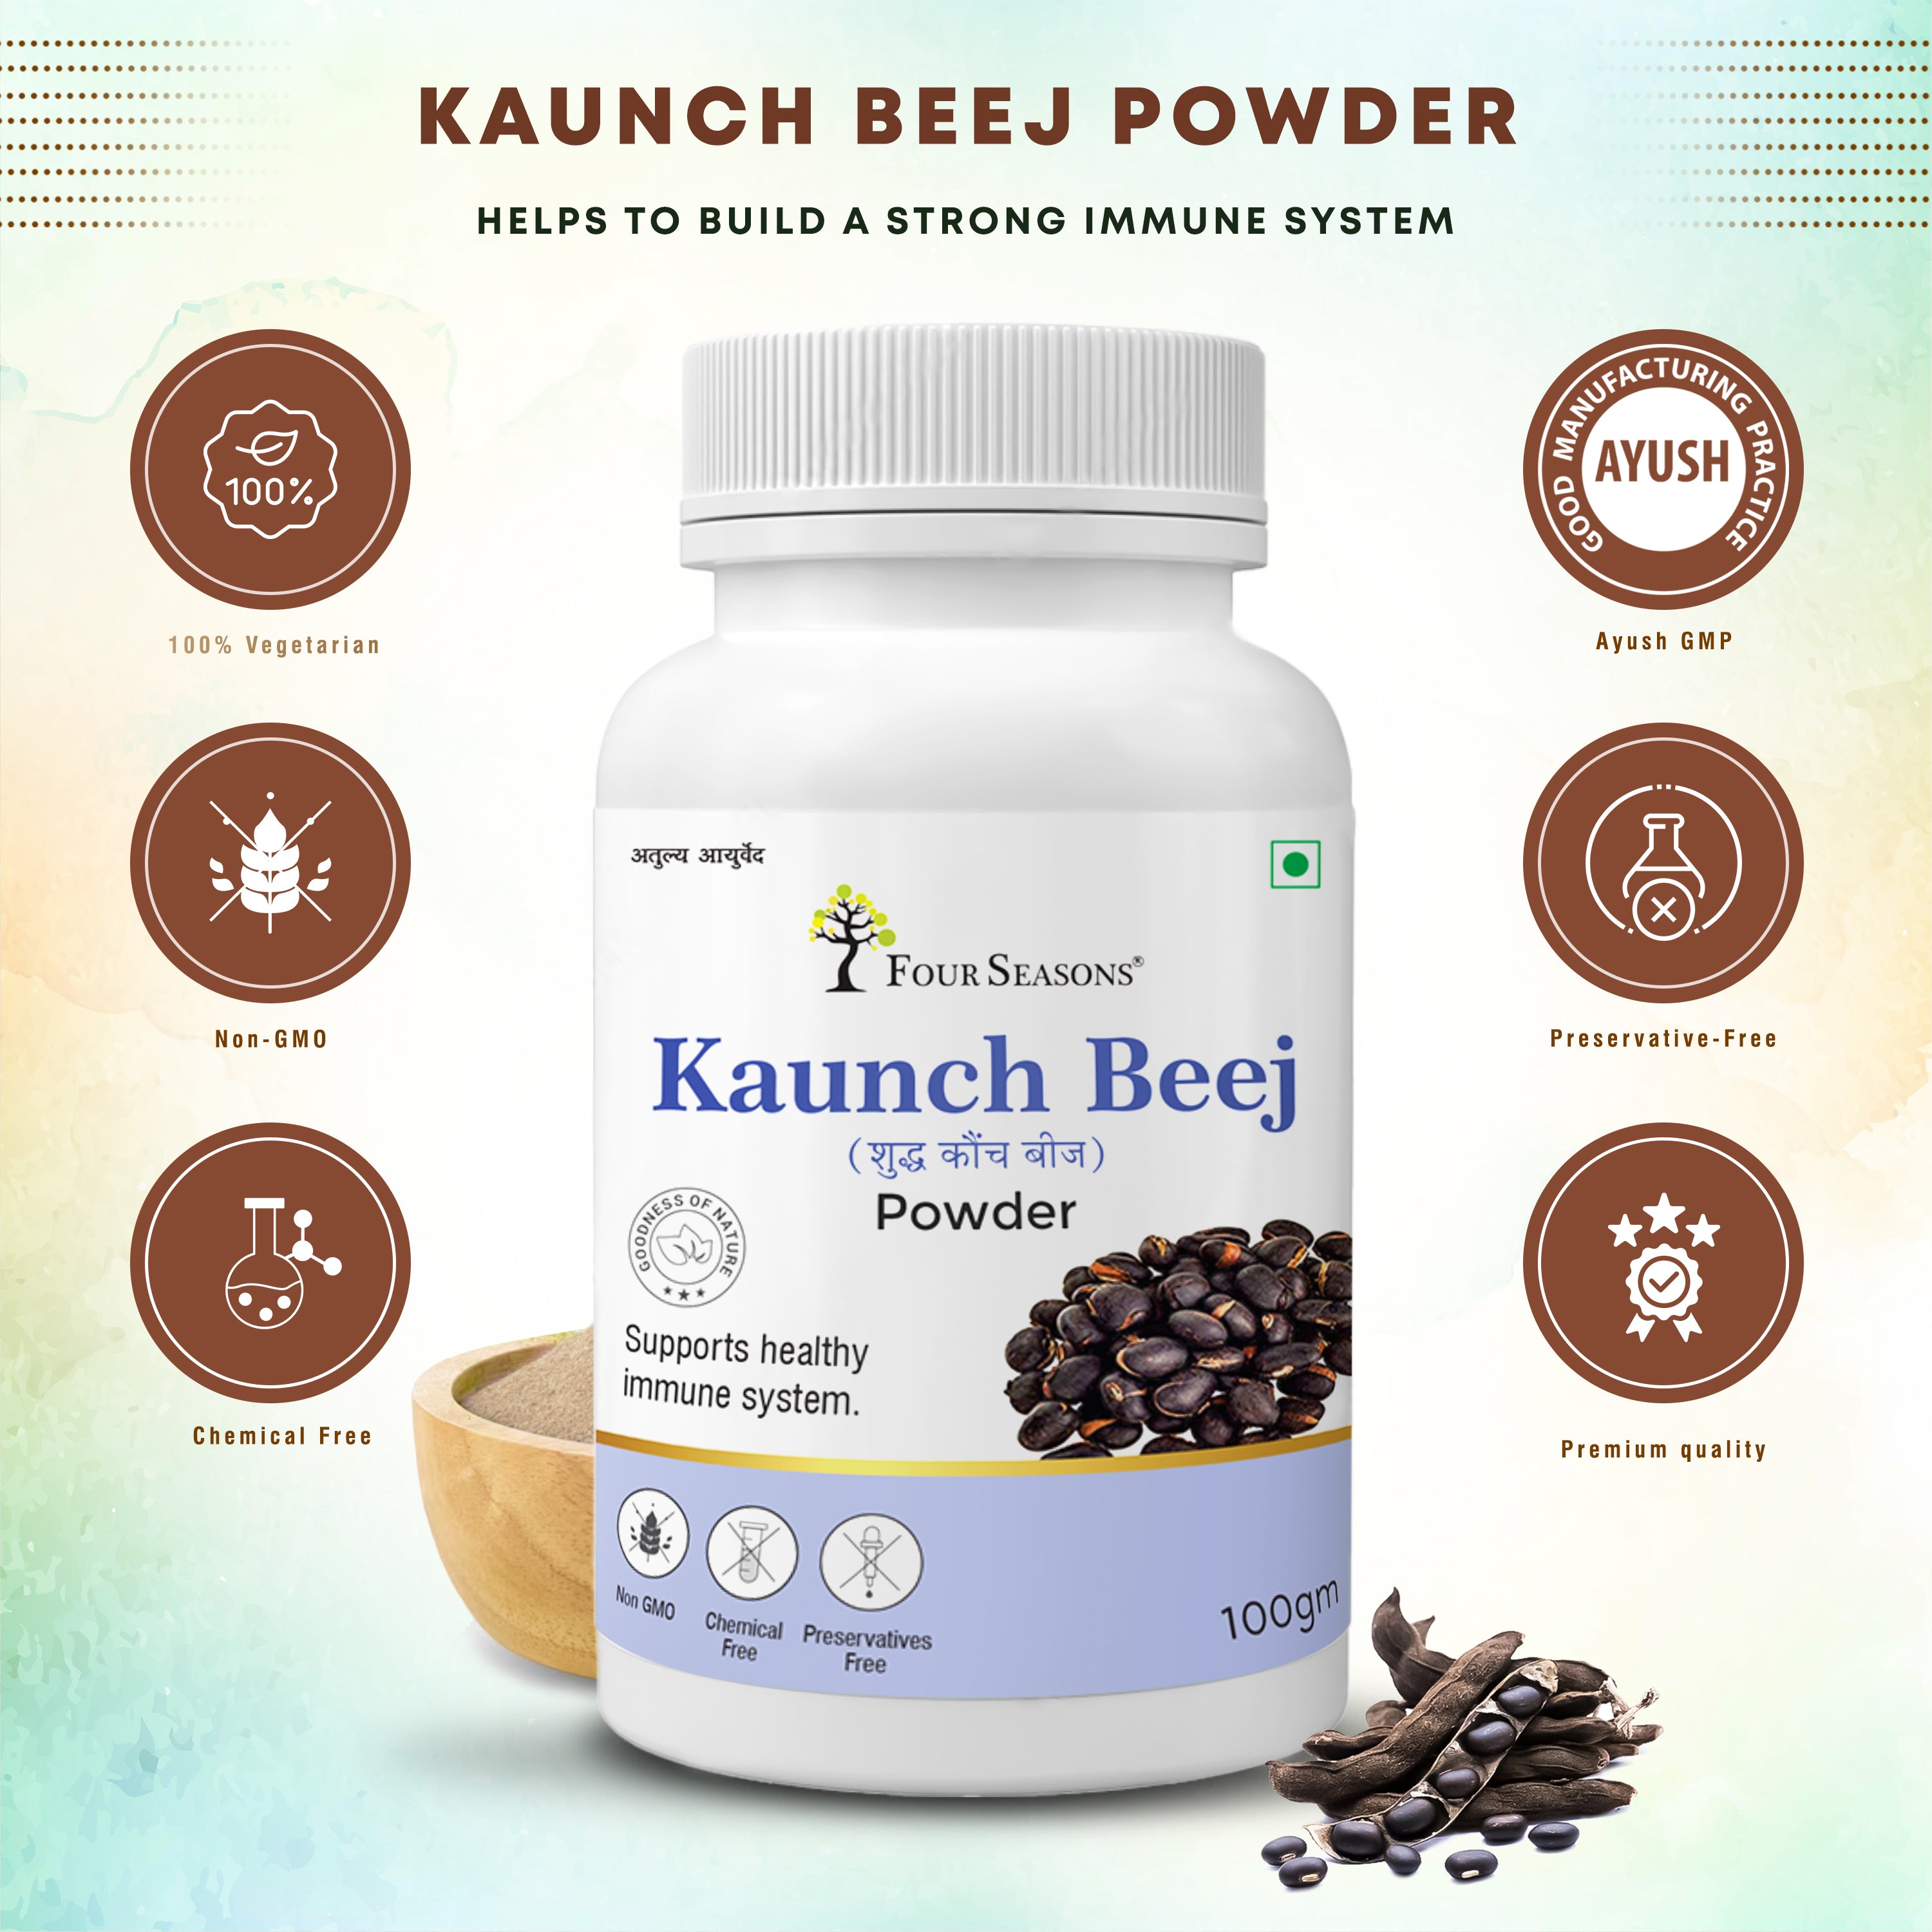 Kaunch Beej Powder